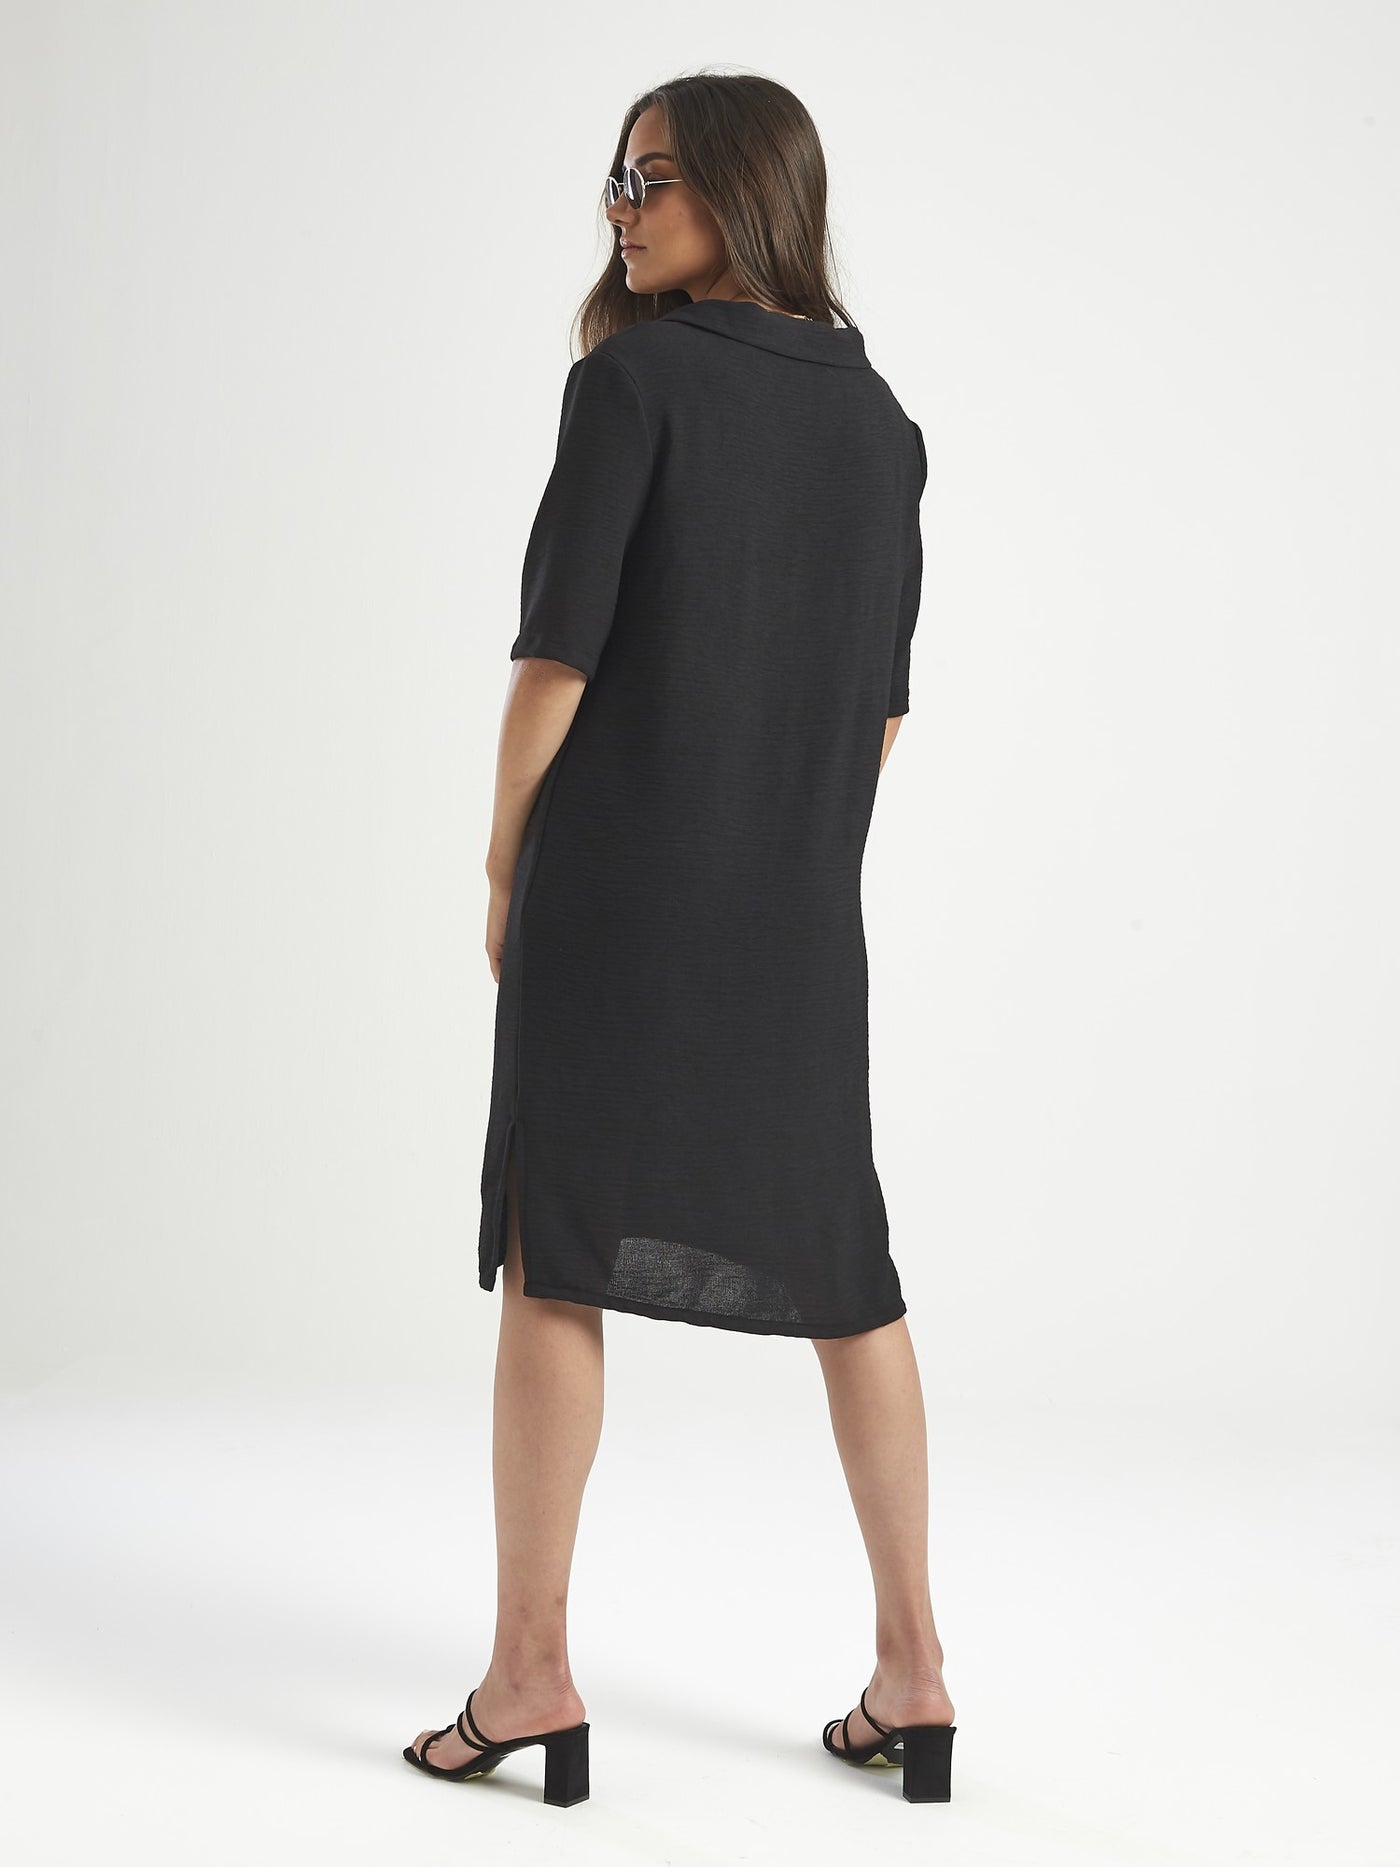 OPIO Women's V-Neck Short Sleeve Dress